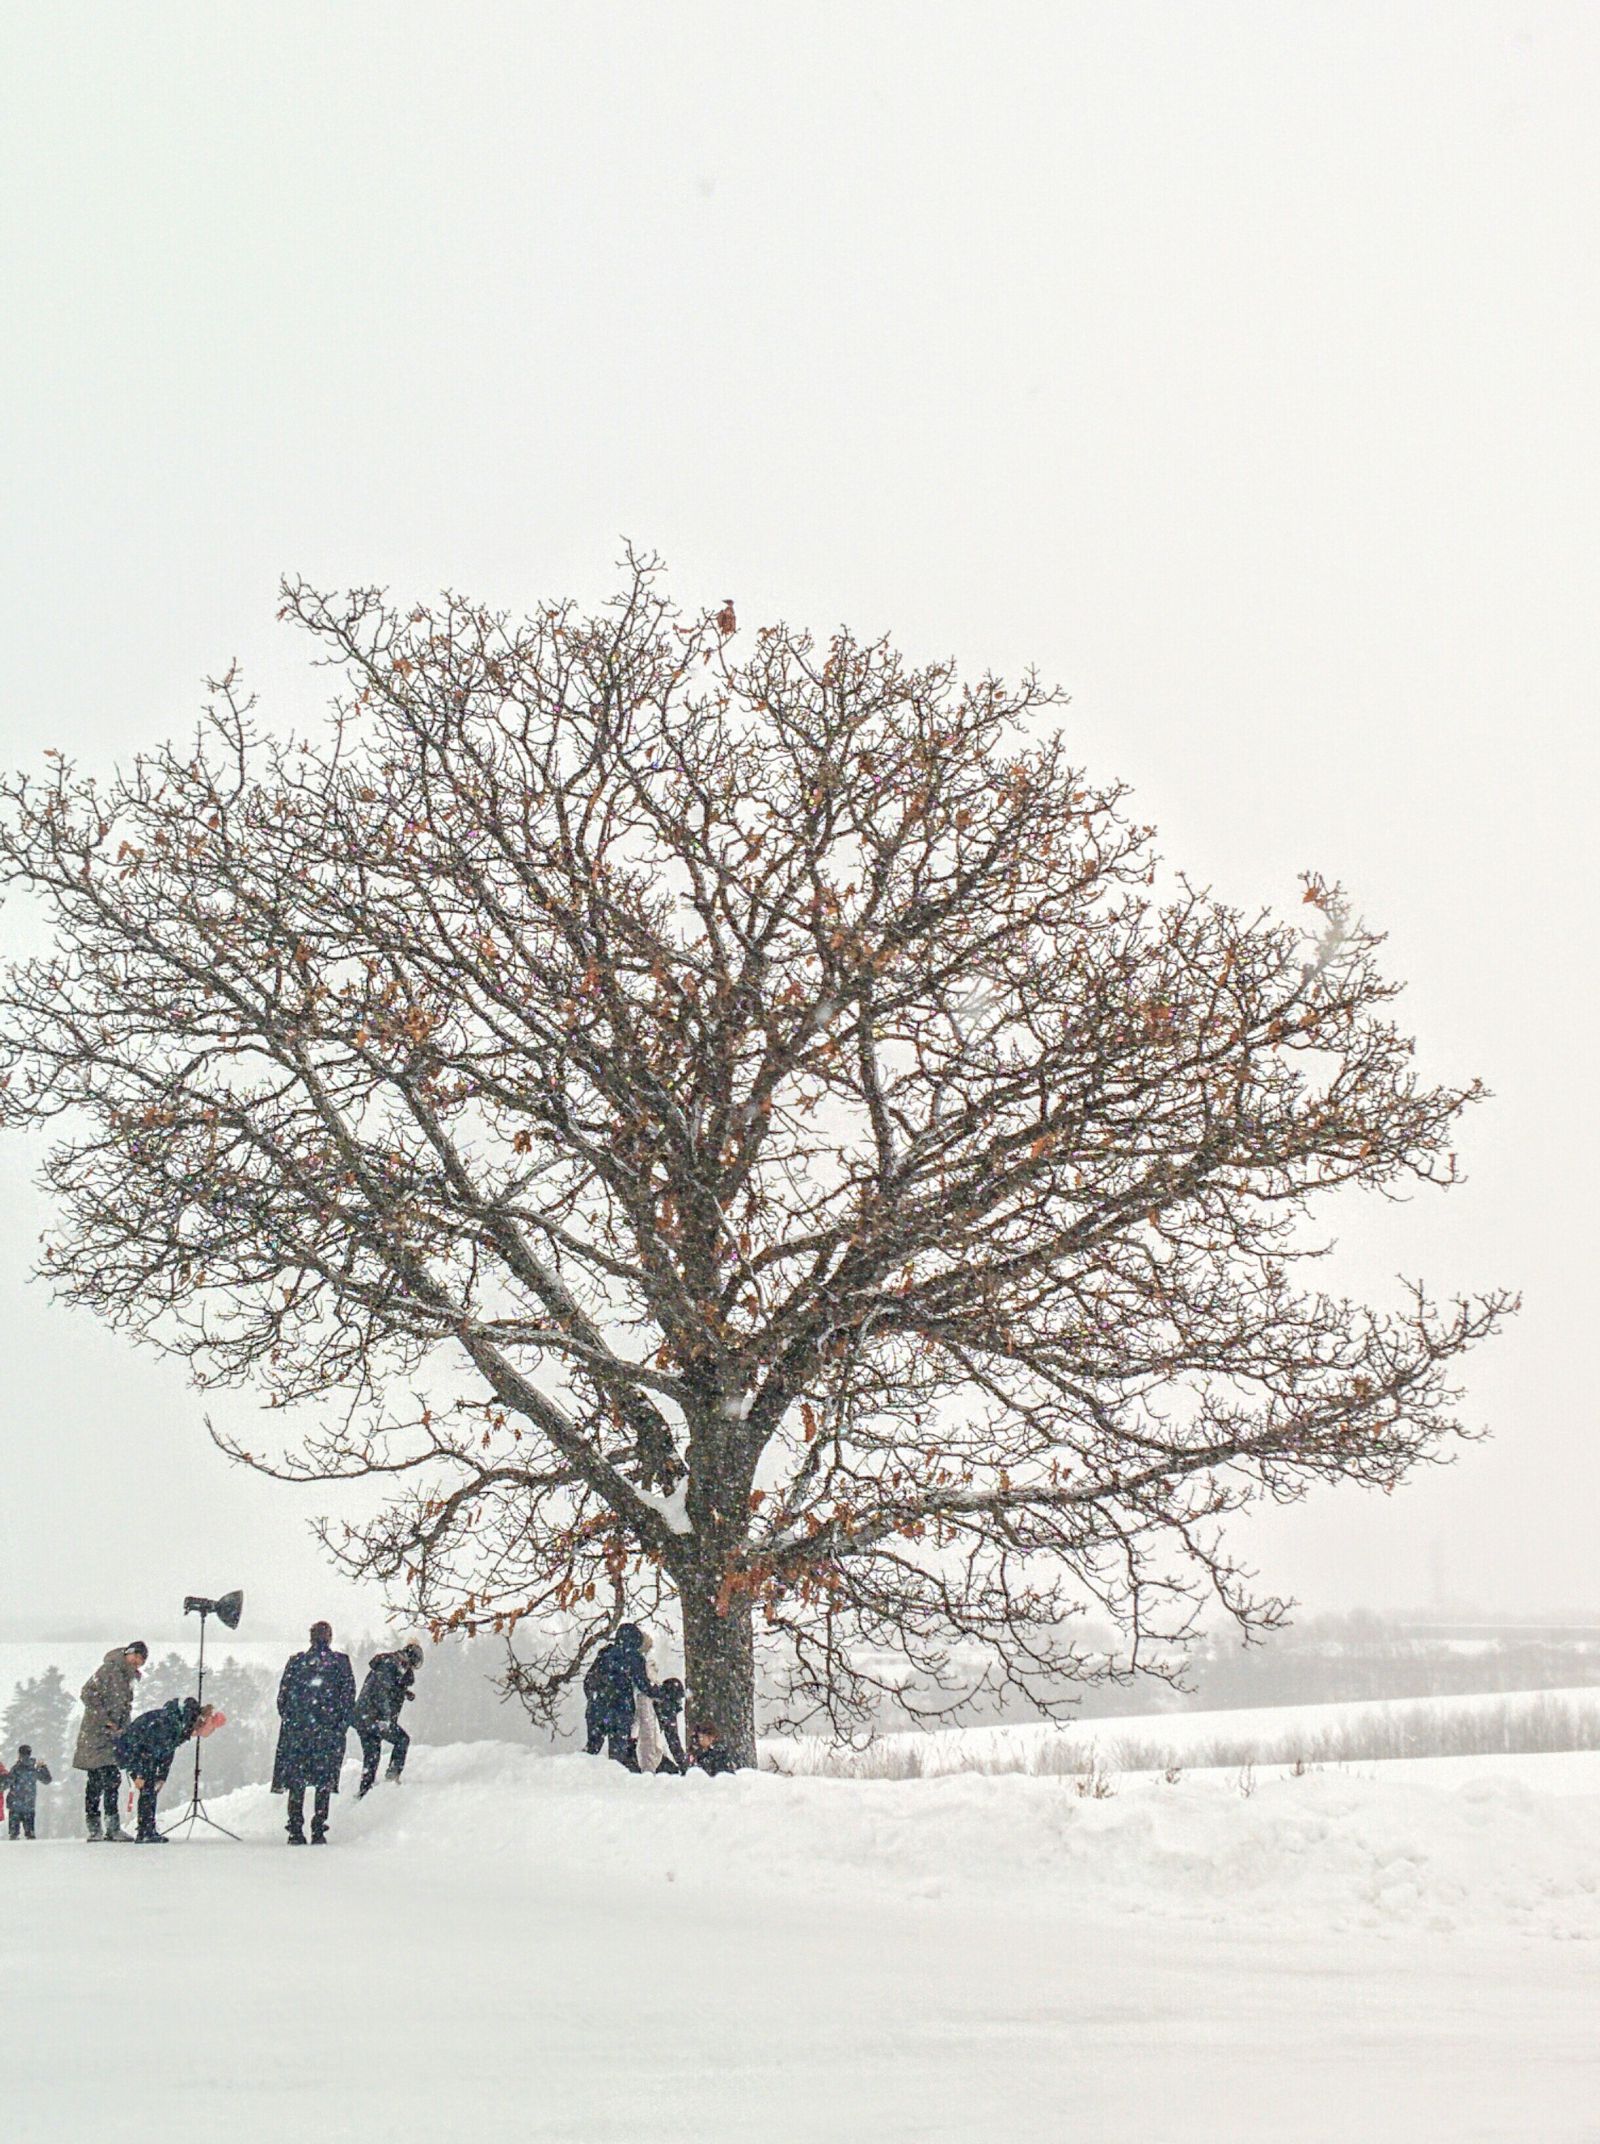 美瑛町・セブンスターの木「冬」観光案内です。